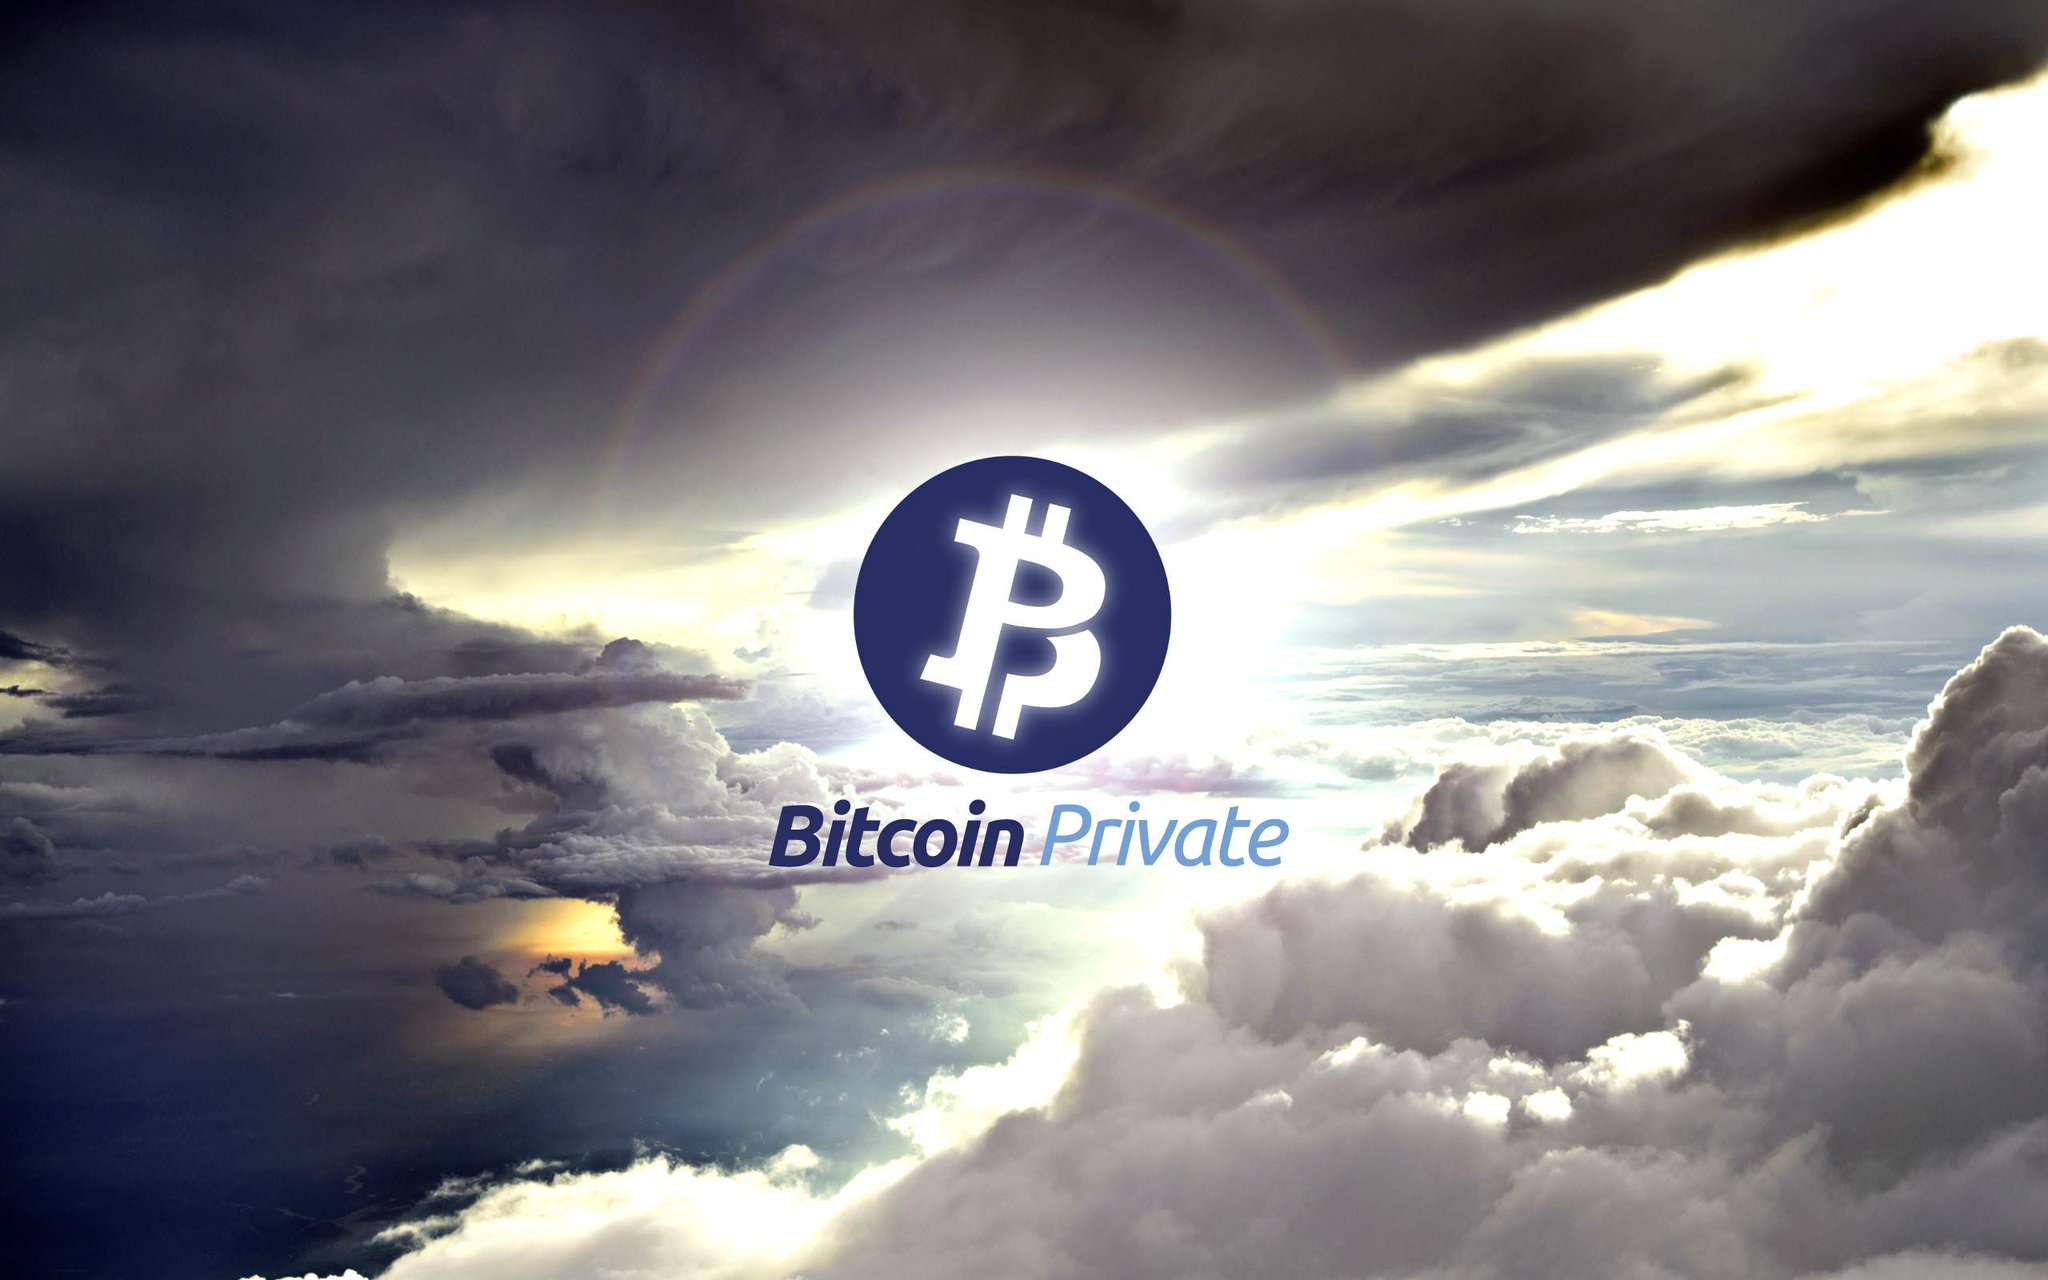 BTC developers. Private bitcoin